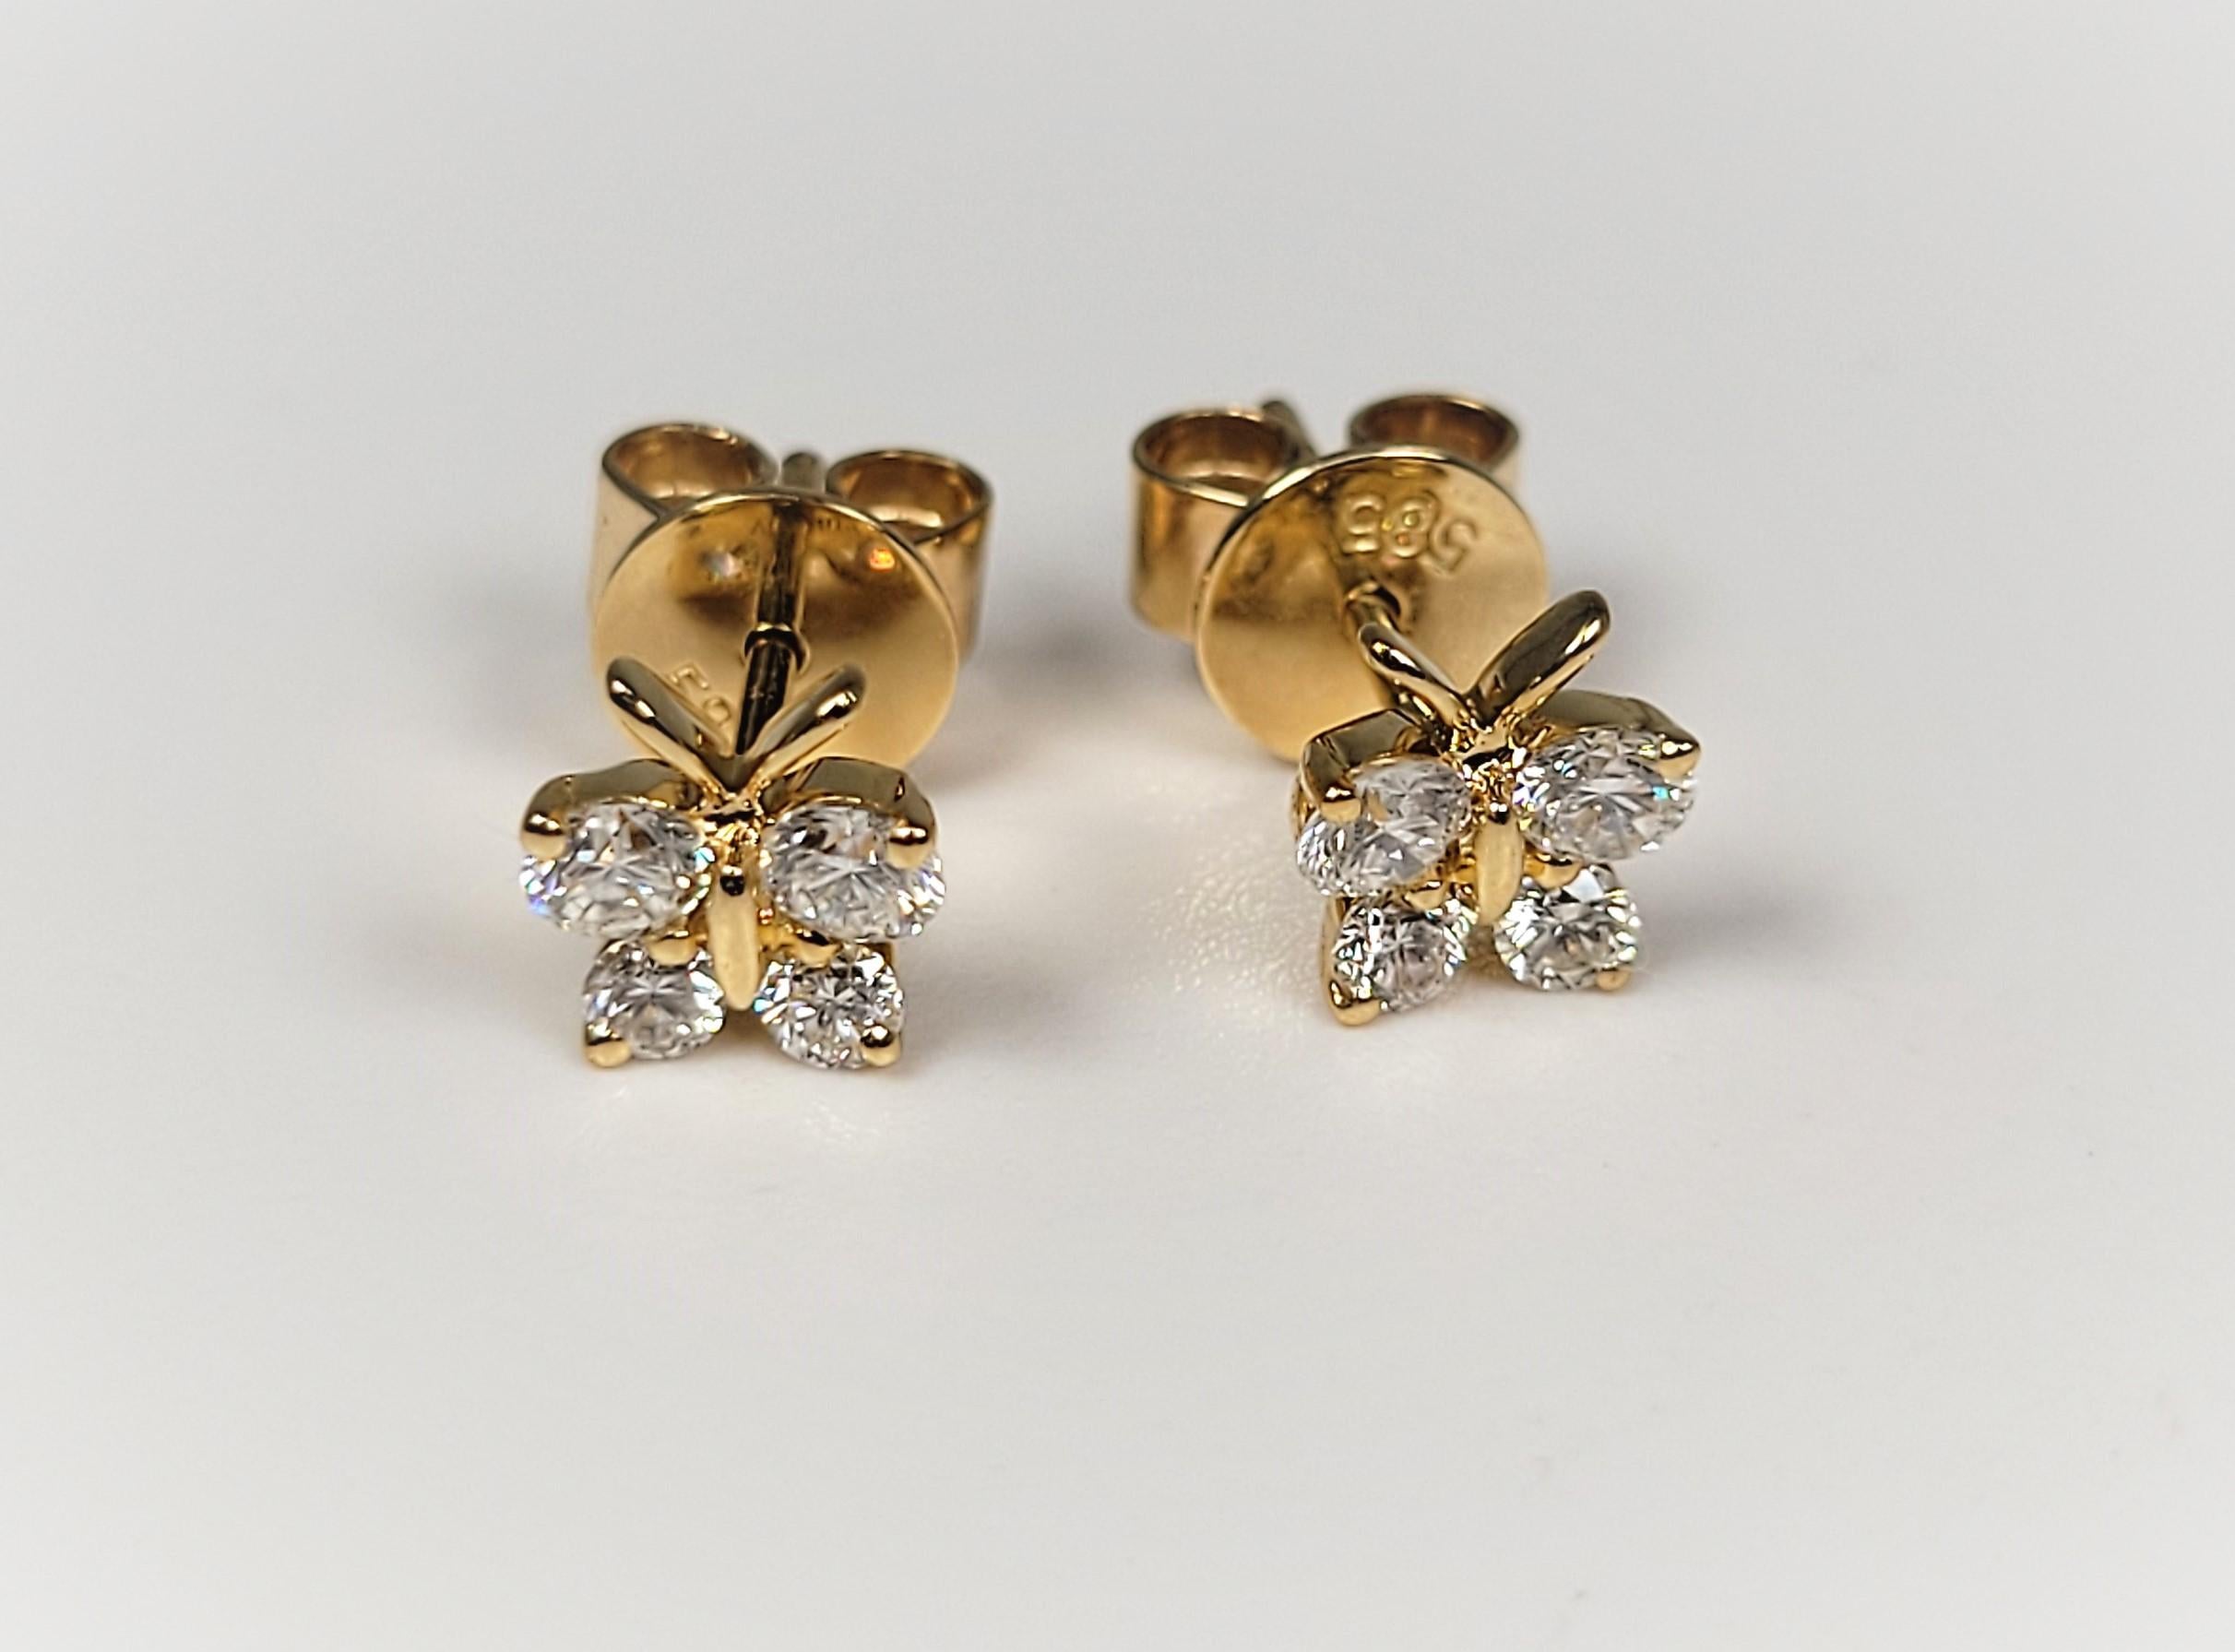 Lovely 0.53 carat diamond butterfly earrings, in 14 karat yellow gold.